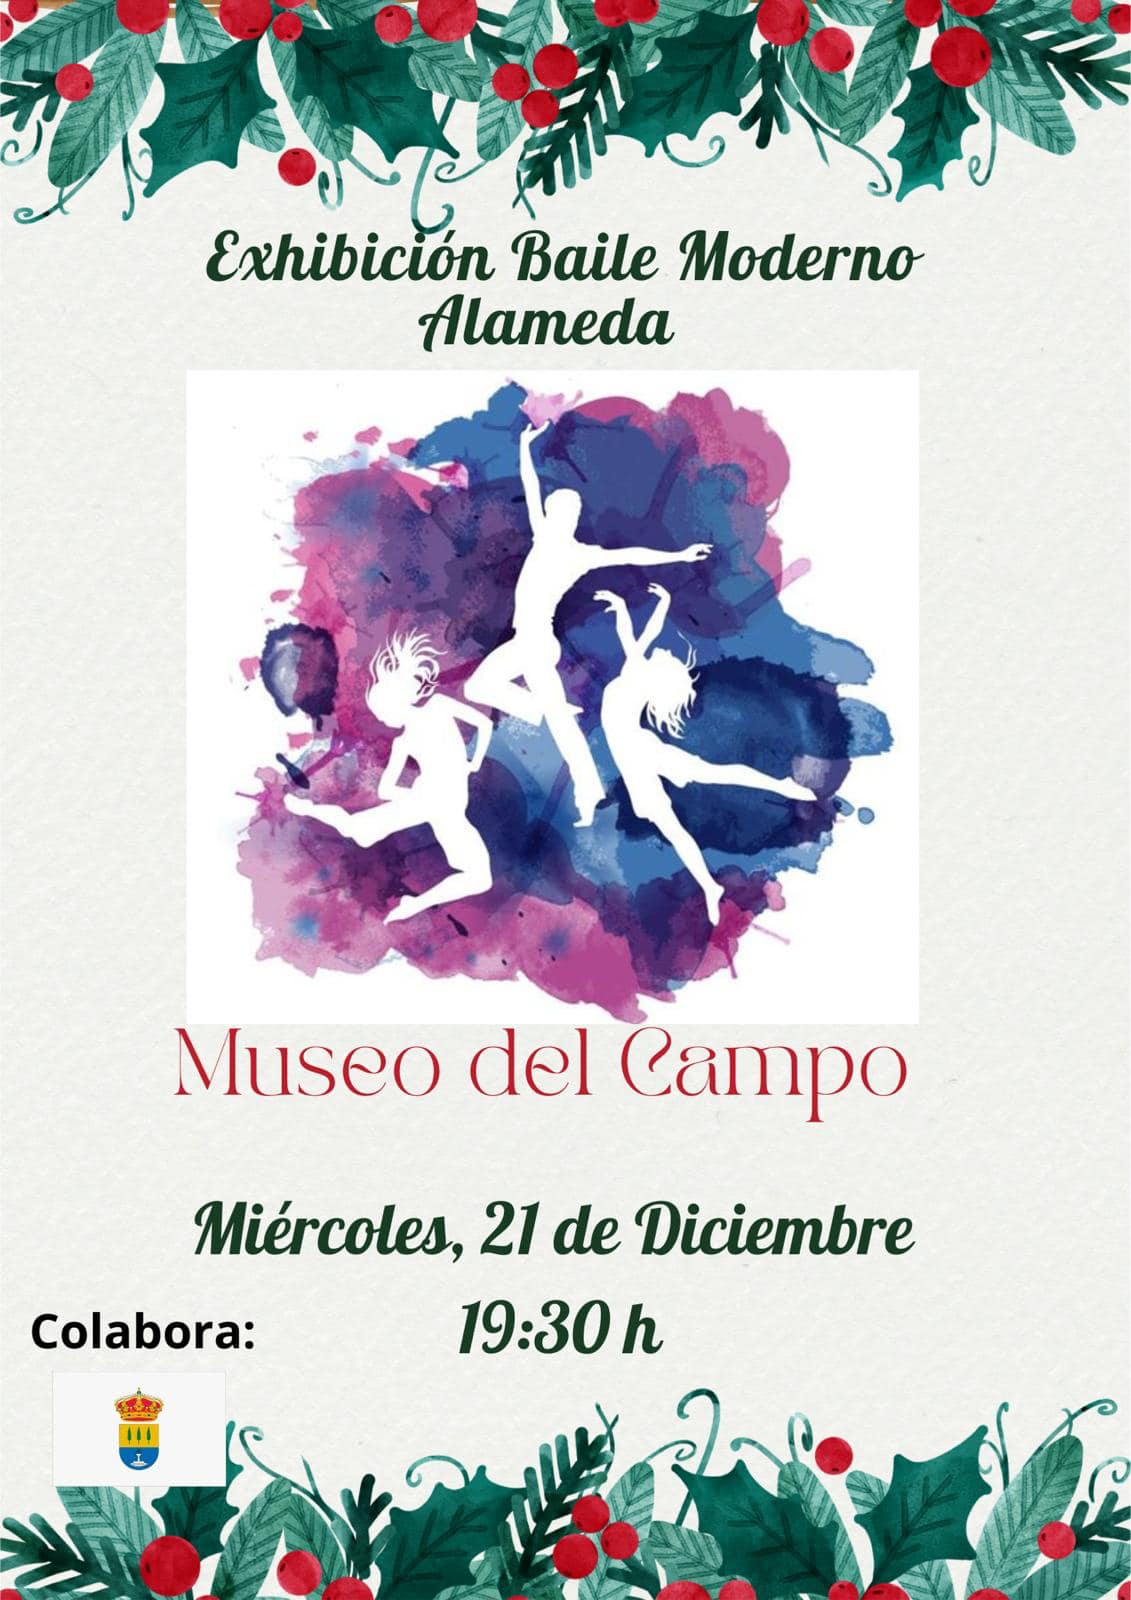 Exhibición de baile moderno (2022) - Alameda (Málaga)